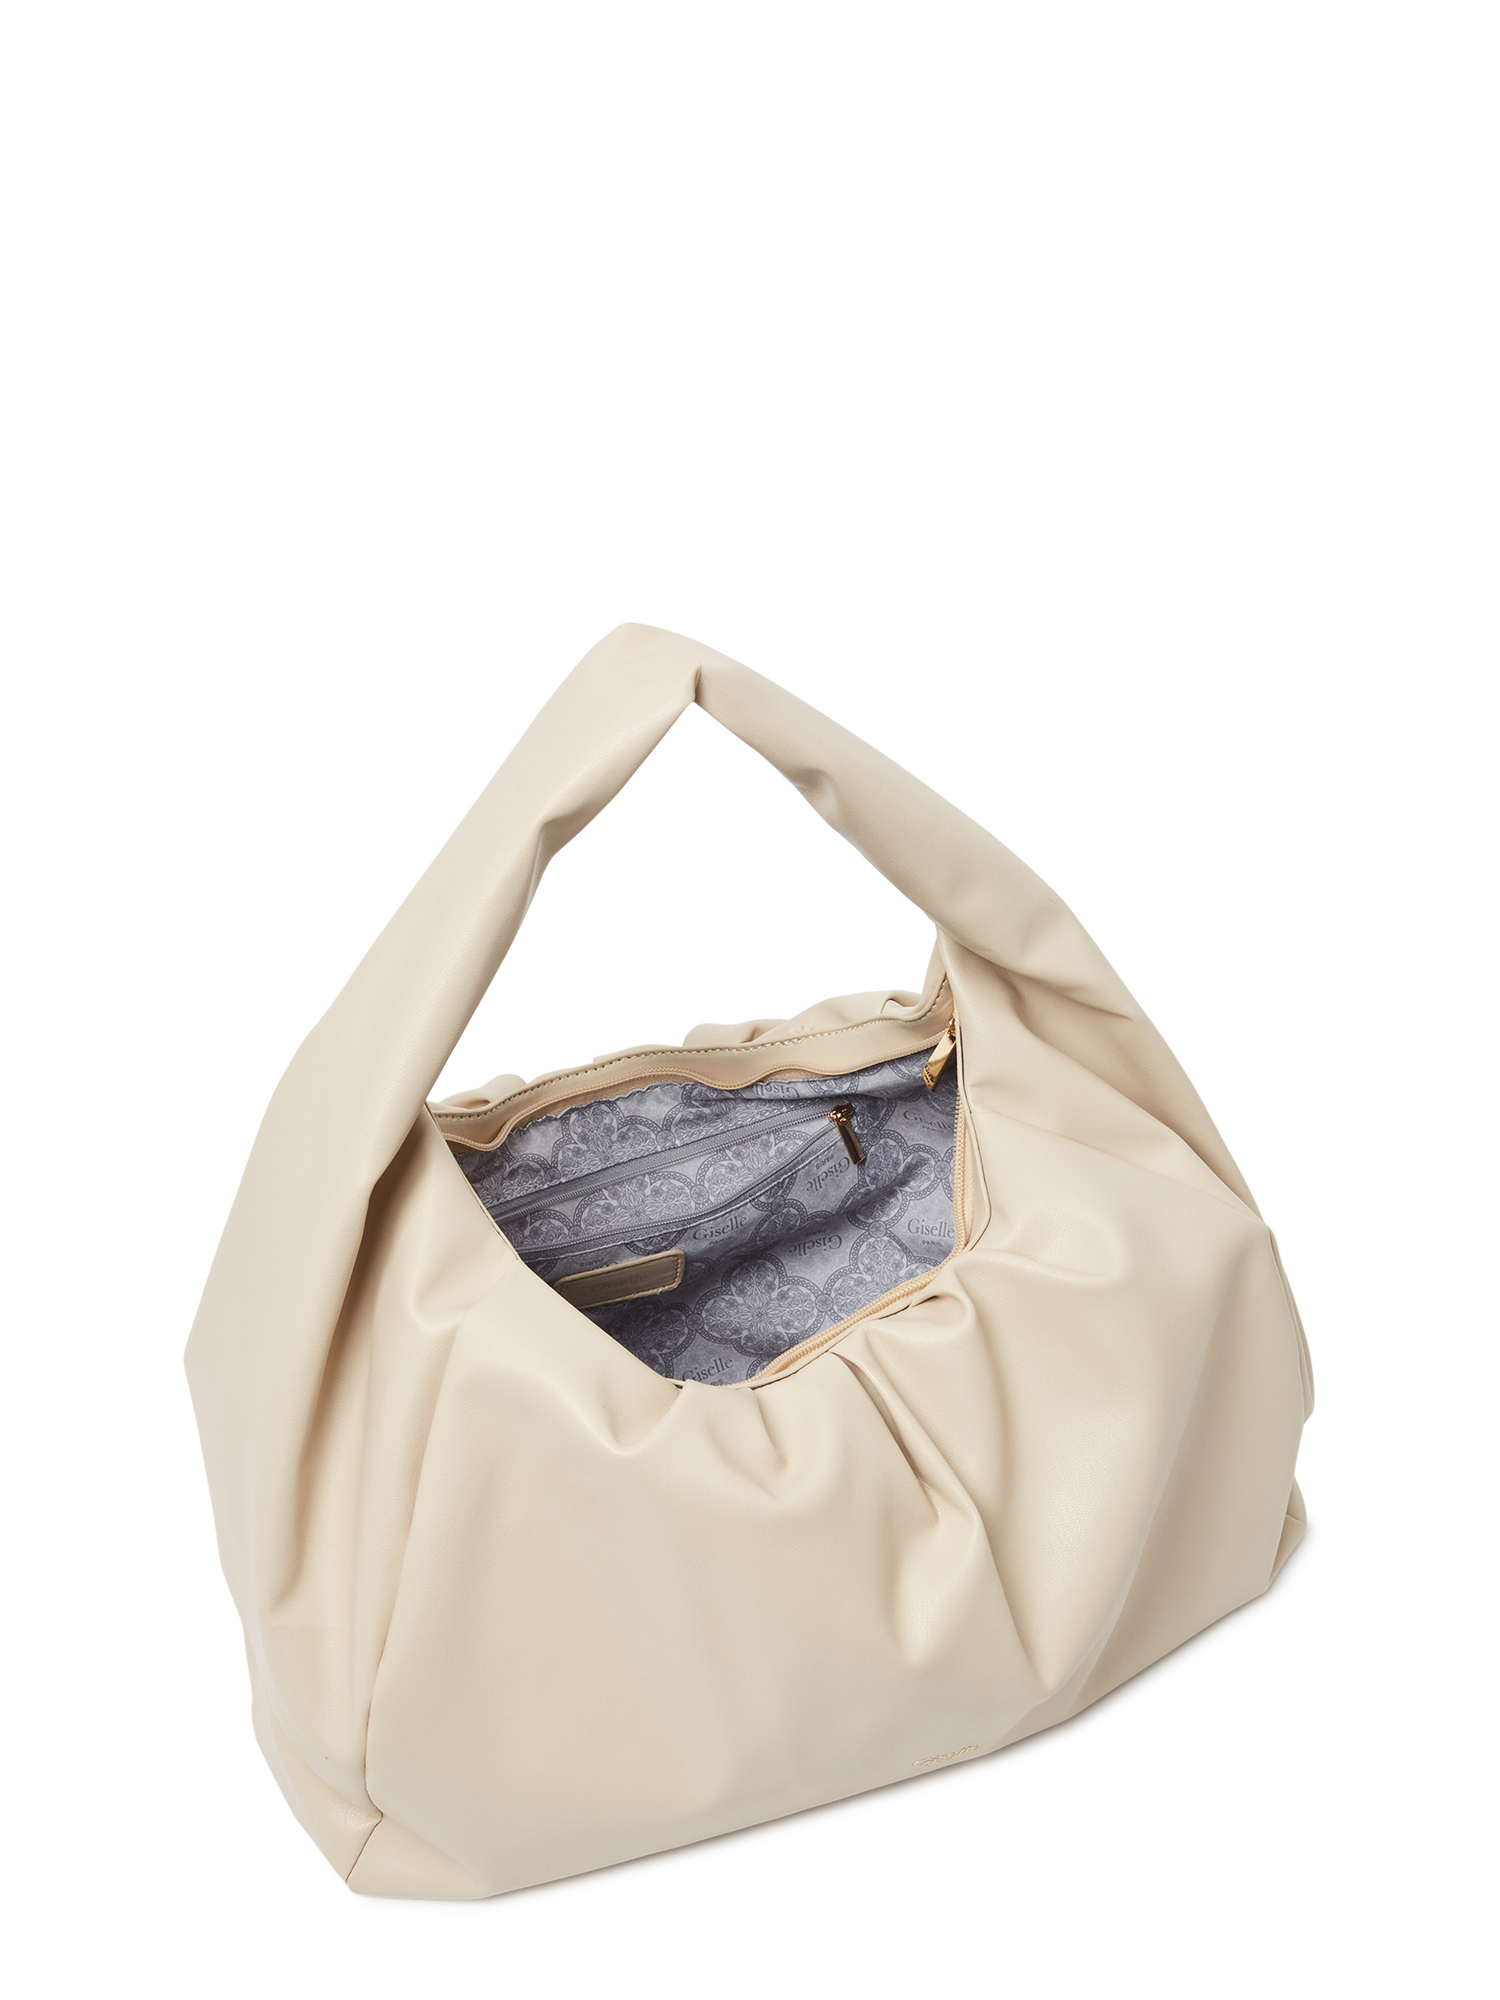 Giselle Paris Women's Adele Vegan Leather Ruched Shoulder Bag - image 5 of 5